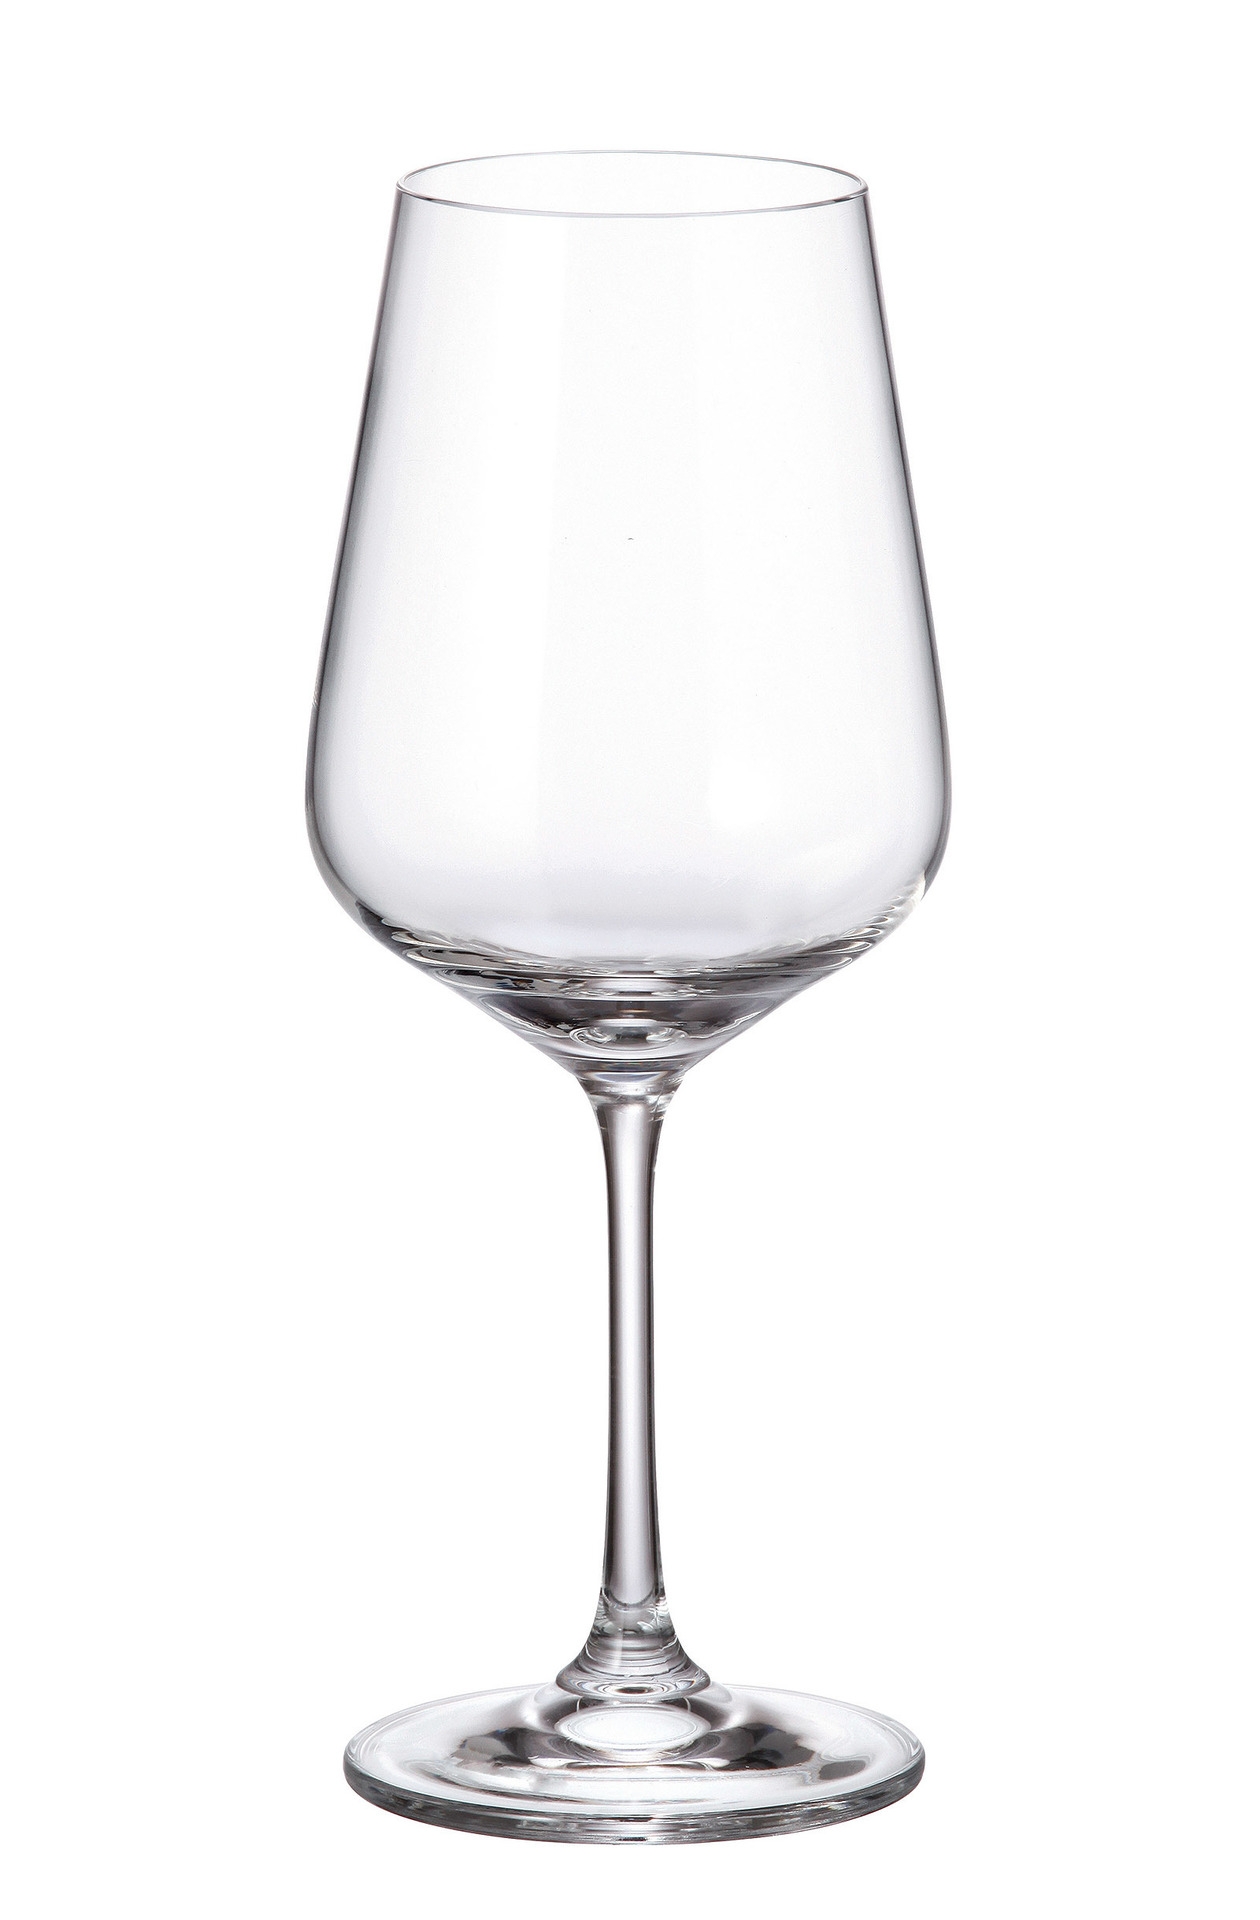 Ποτήρι Κρασιού Κρυστάλλινο Bohemia Strx 360ml (Σετ 6 Τεμάχια) (Υλικό: Κρύσταλλο, Χρώμα: Διάφανο , Μέγεθος: Κολωνάτο) - Κρύσταλλα Βοημίας - CTB06902036